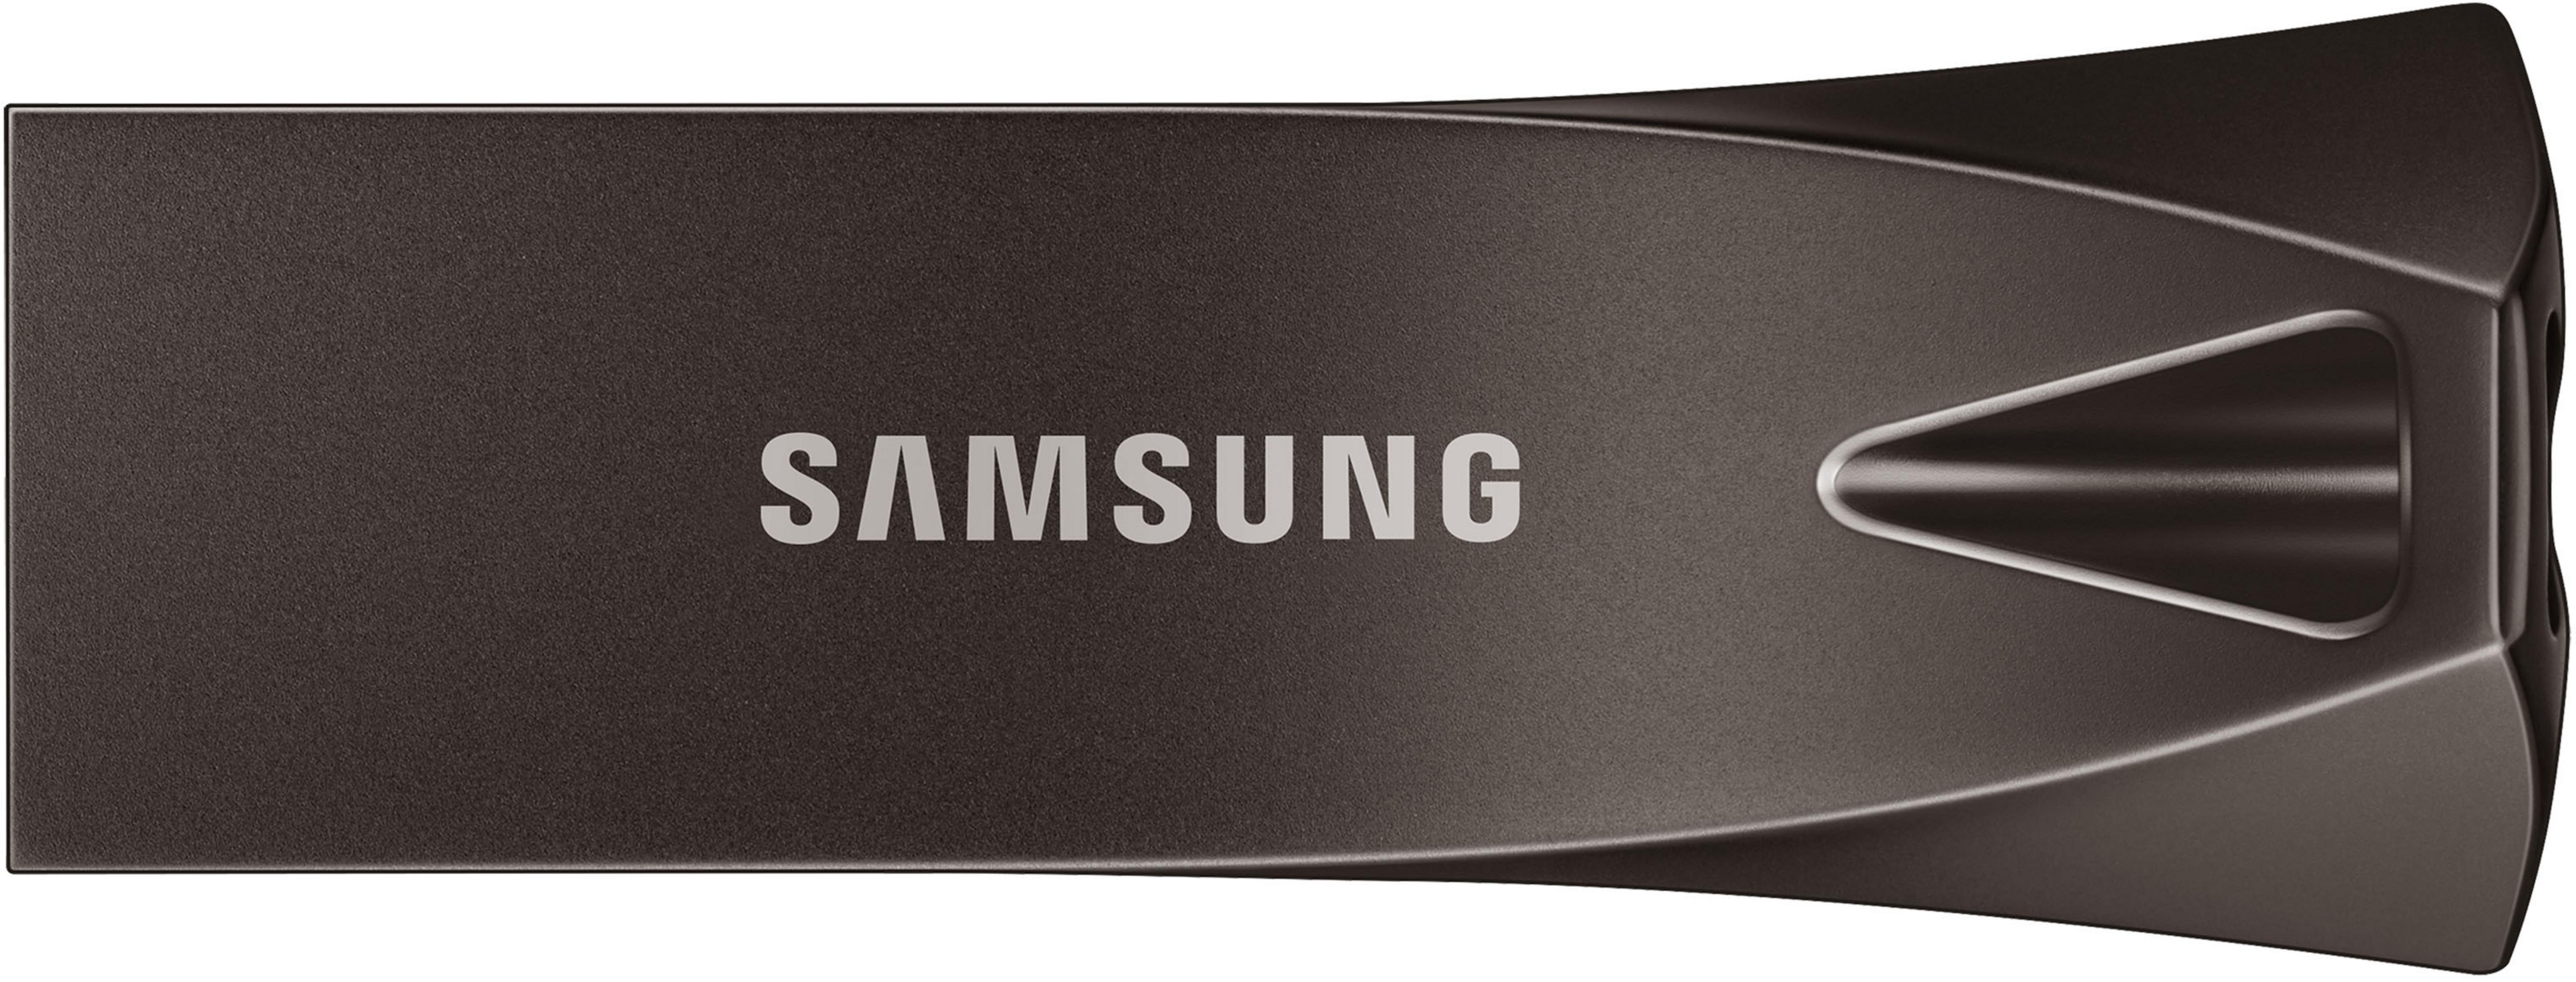 SAMSUNG MUF-128BE4/EU USB DRIVE BAR USB-Stick PLUS 128GB 128 (Titan TITAN GB) Grau